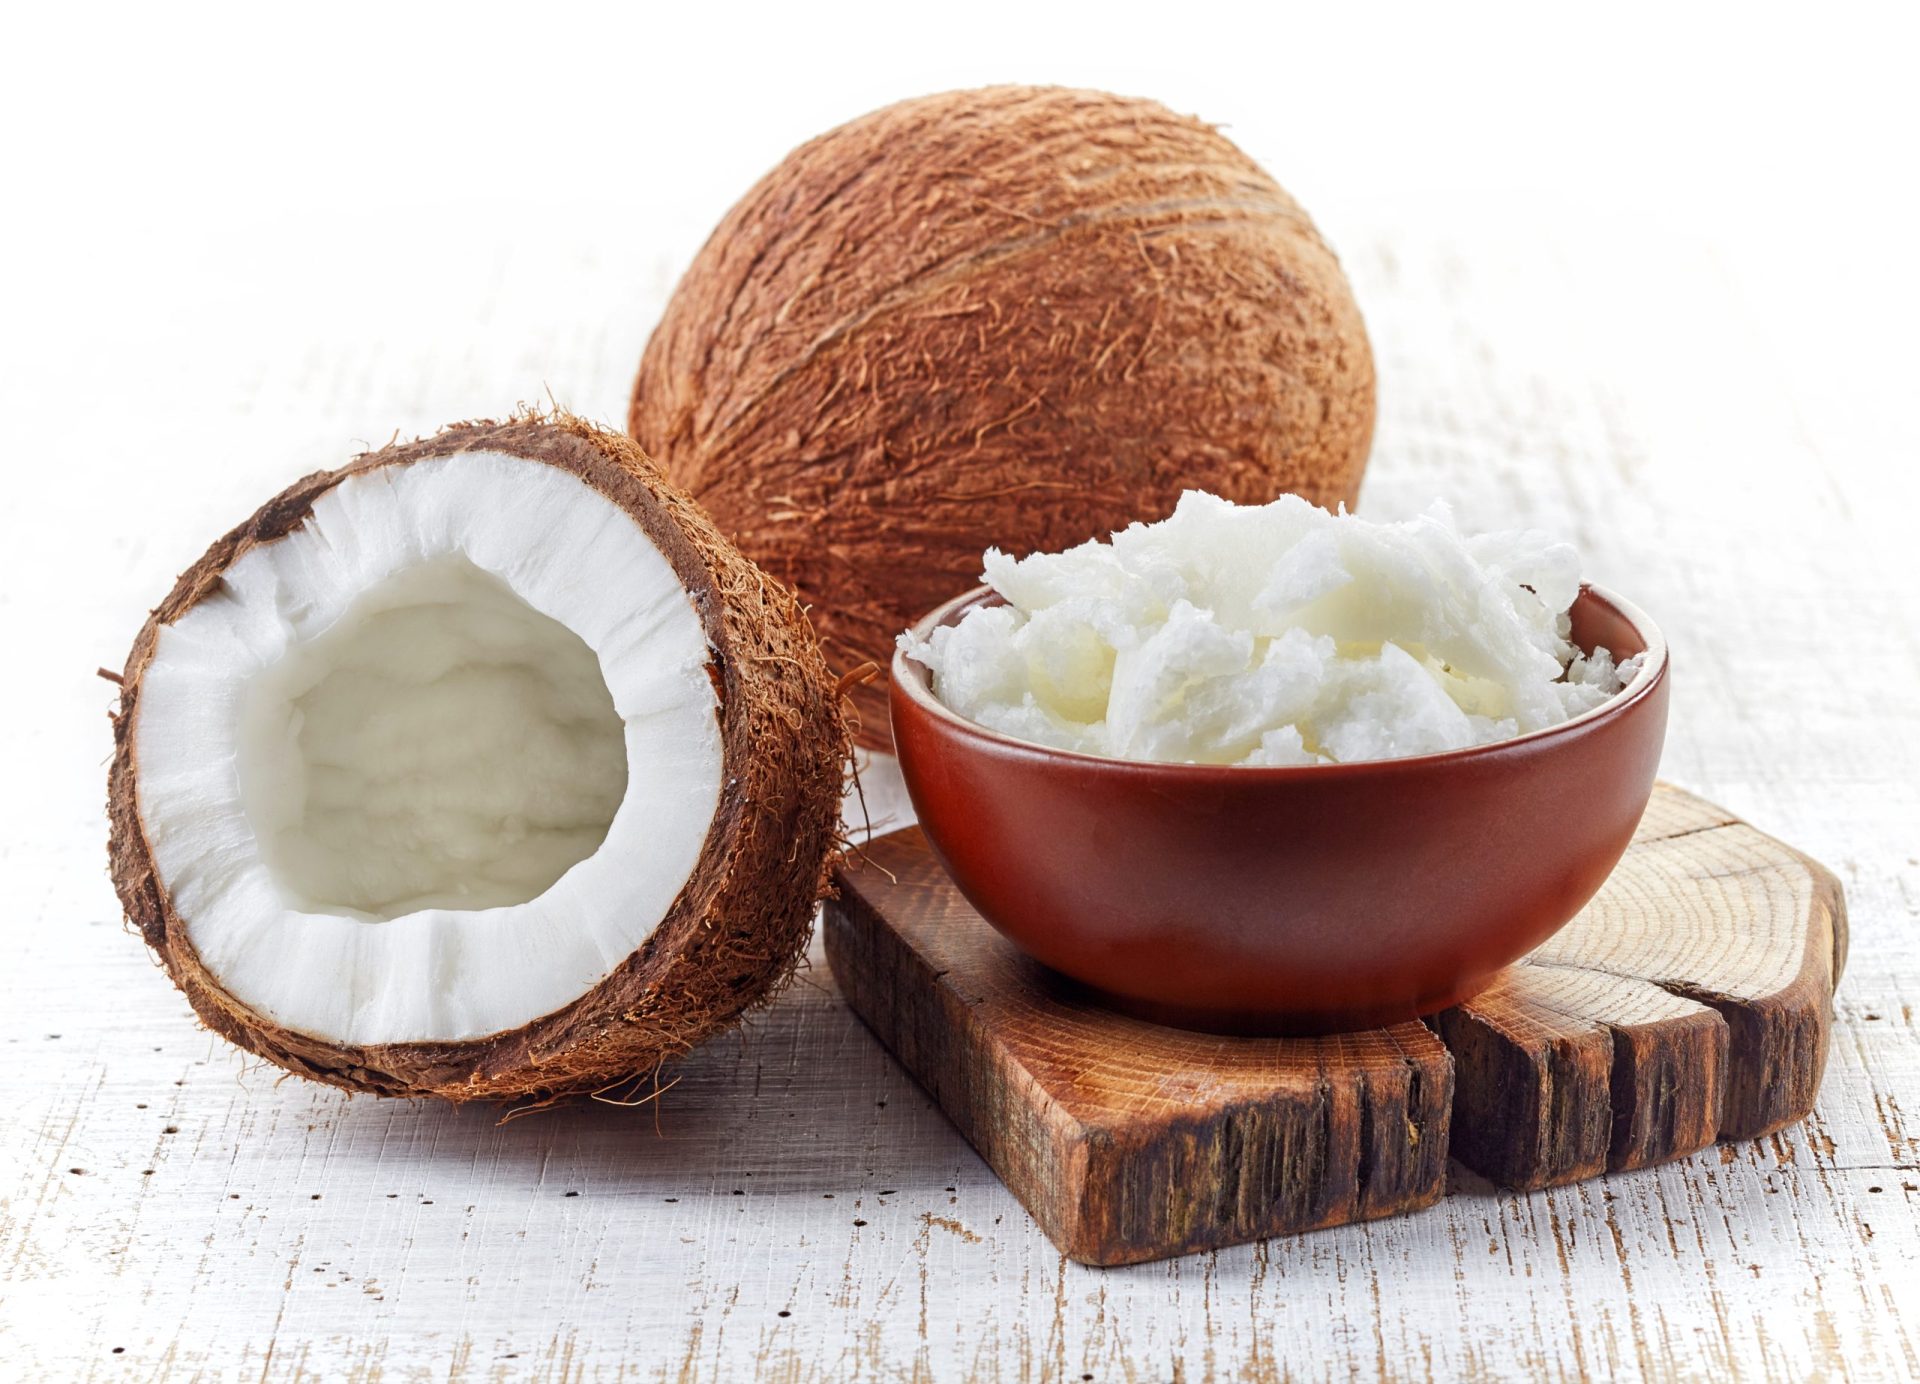 Óleo de coco tem mais gordura saturada do que a manteiga